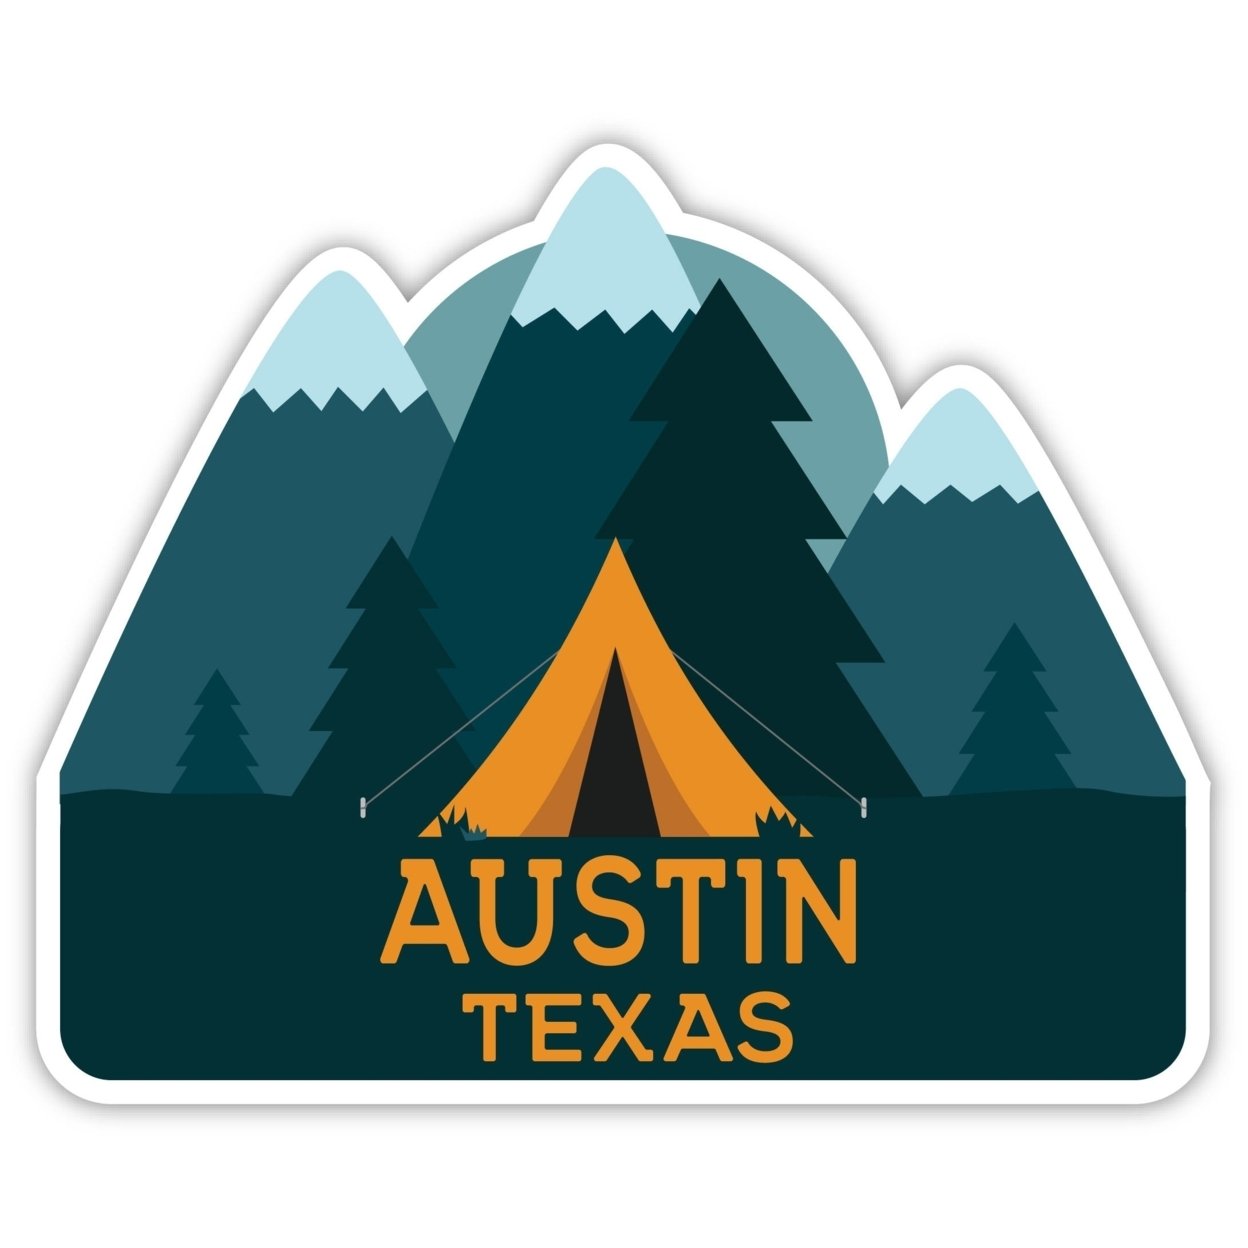 Austin Texas Souvenir Decorative Stickers (Choose Theme And Size) - Single Unit, 12-Inch, Tent